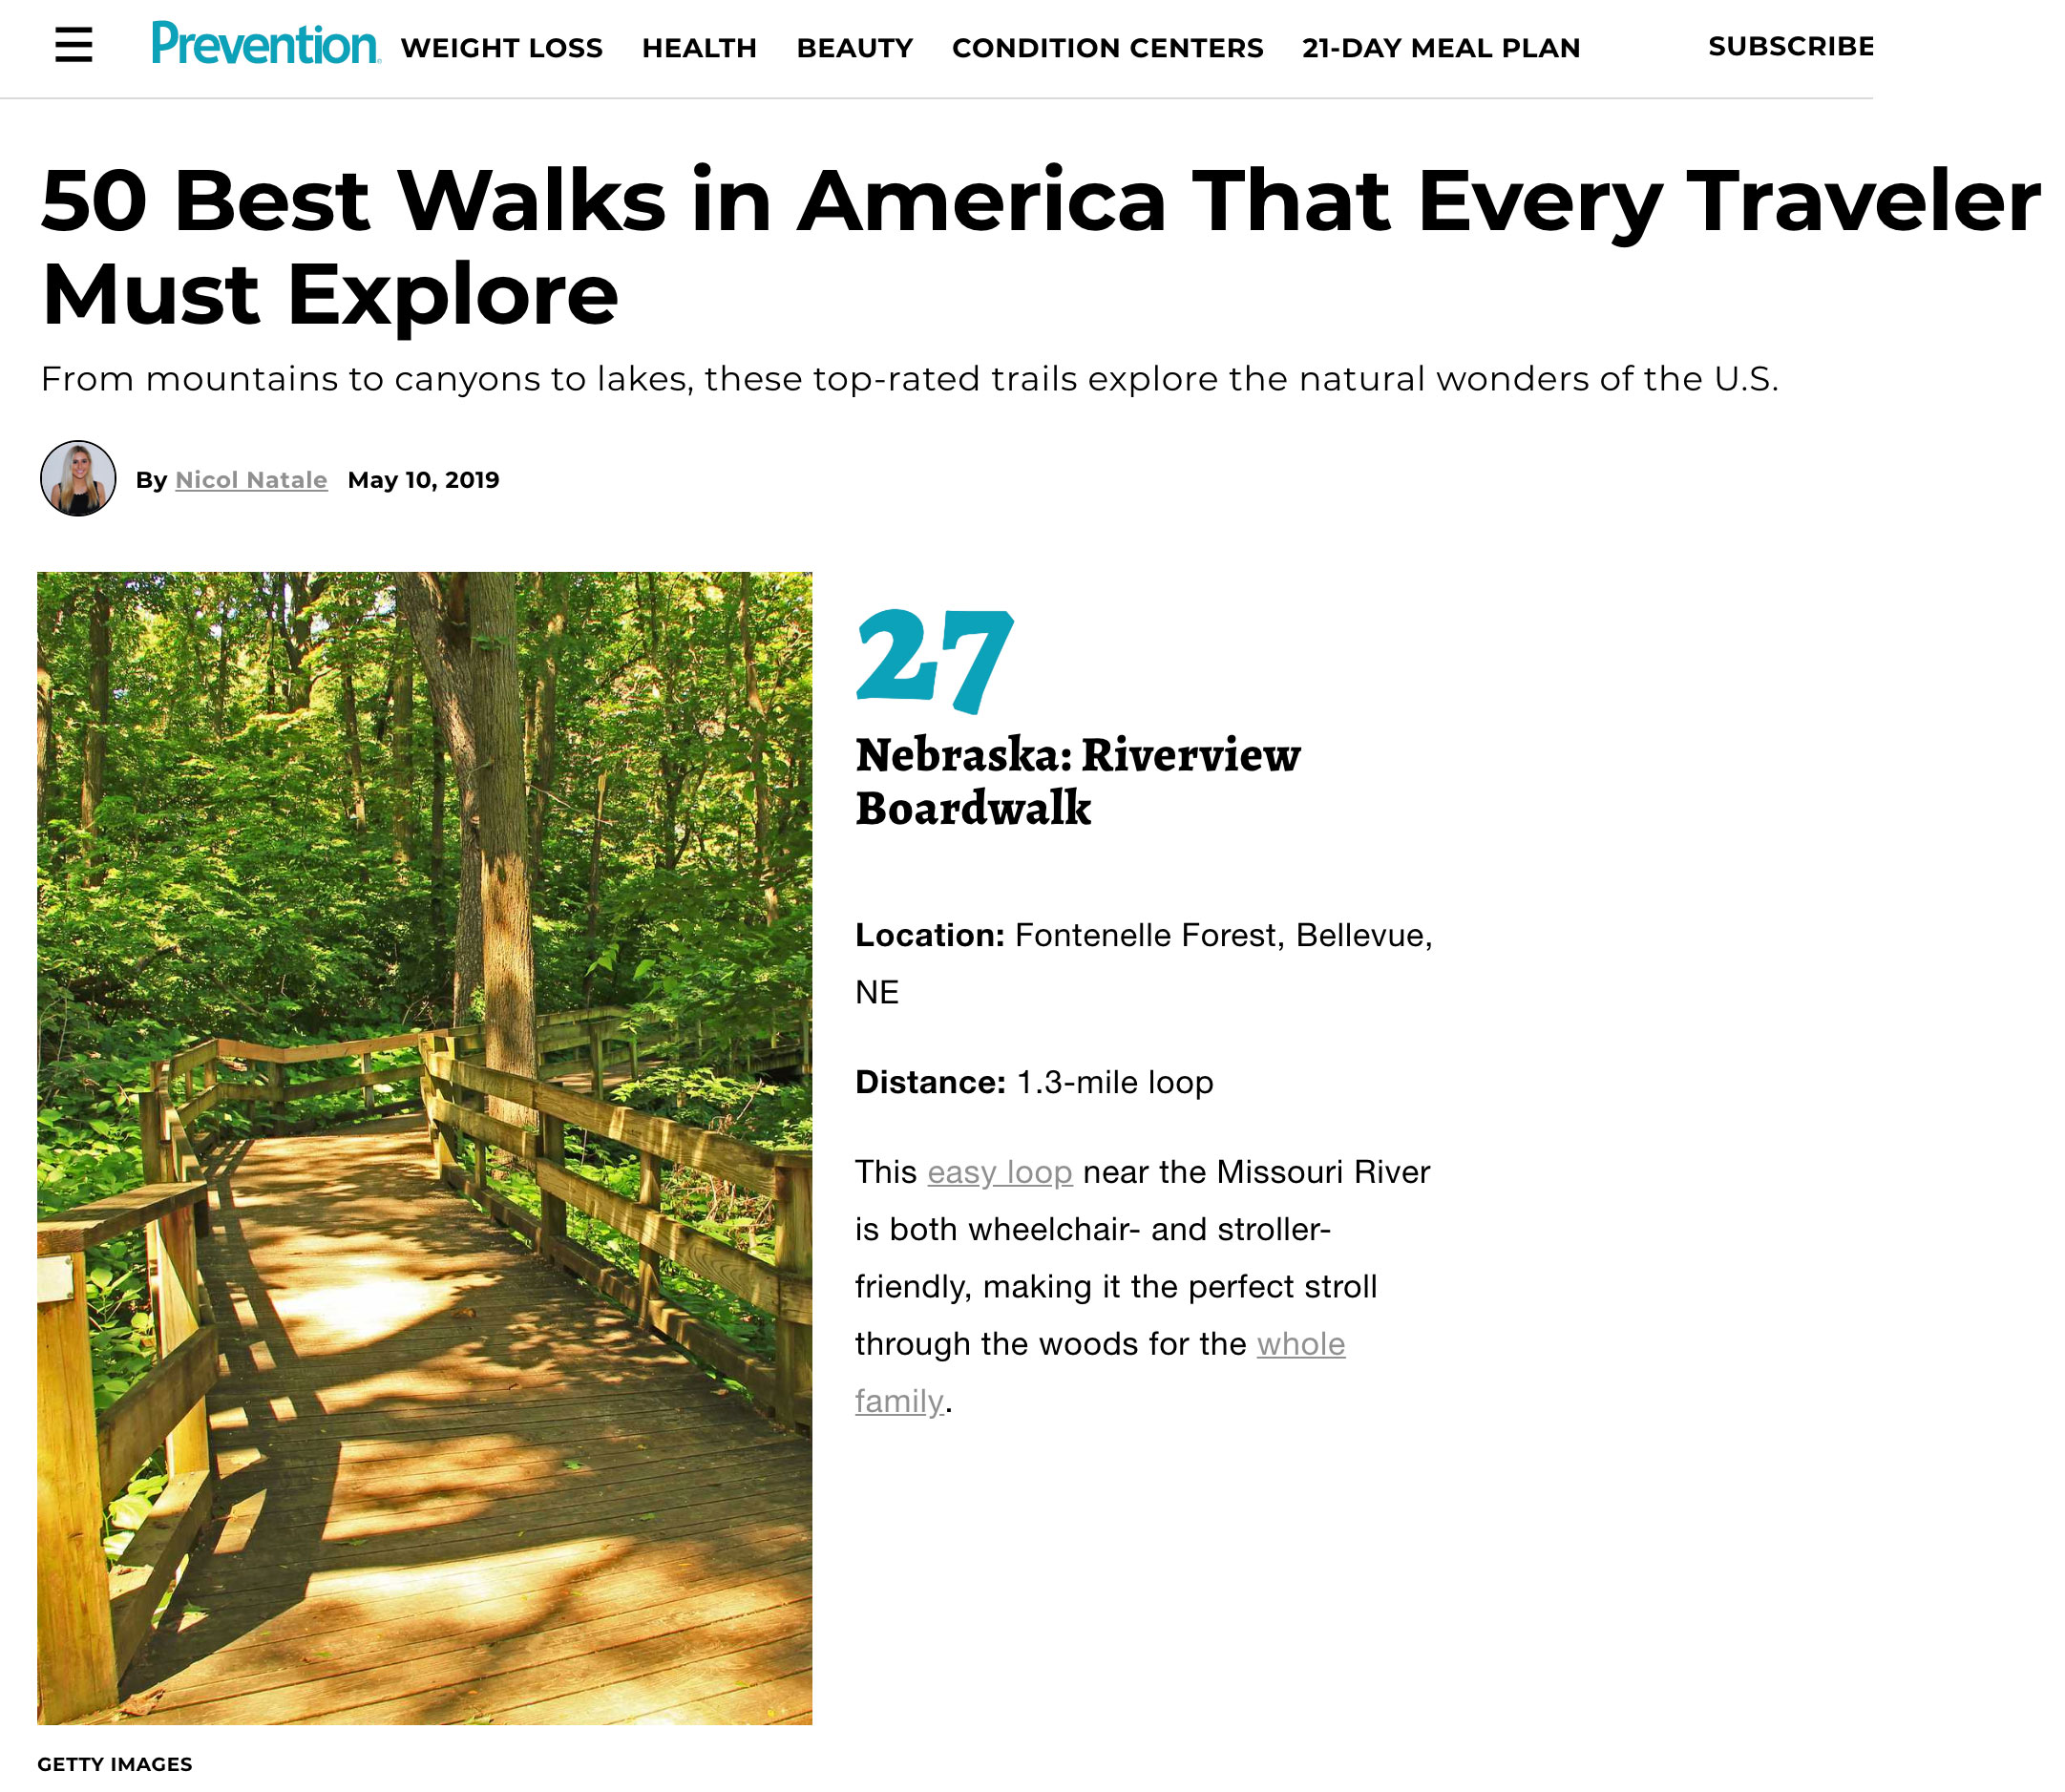 50 Best Walks - Fontenelle Forest